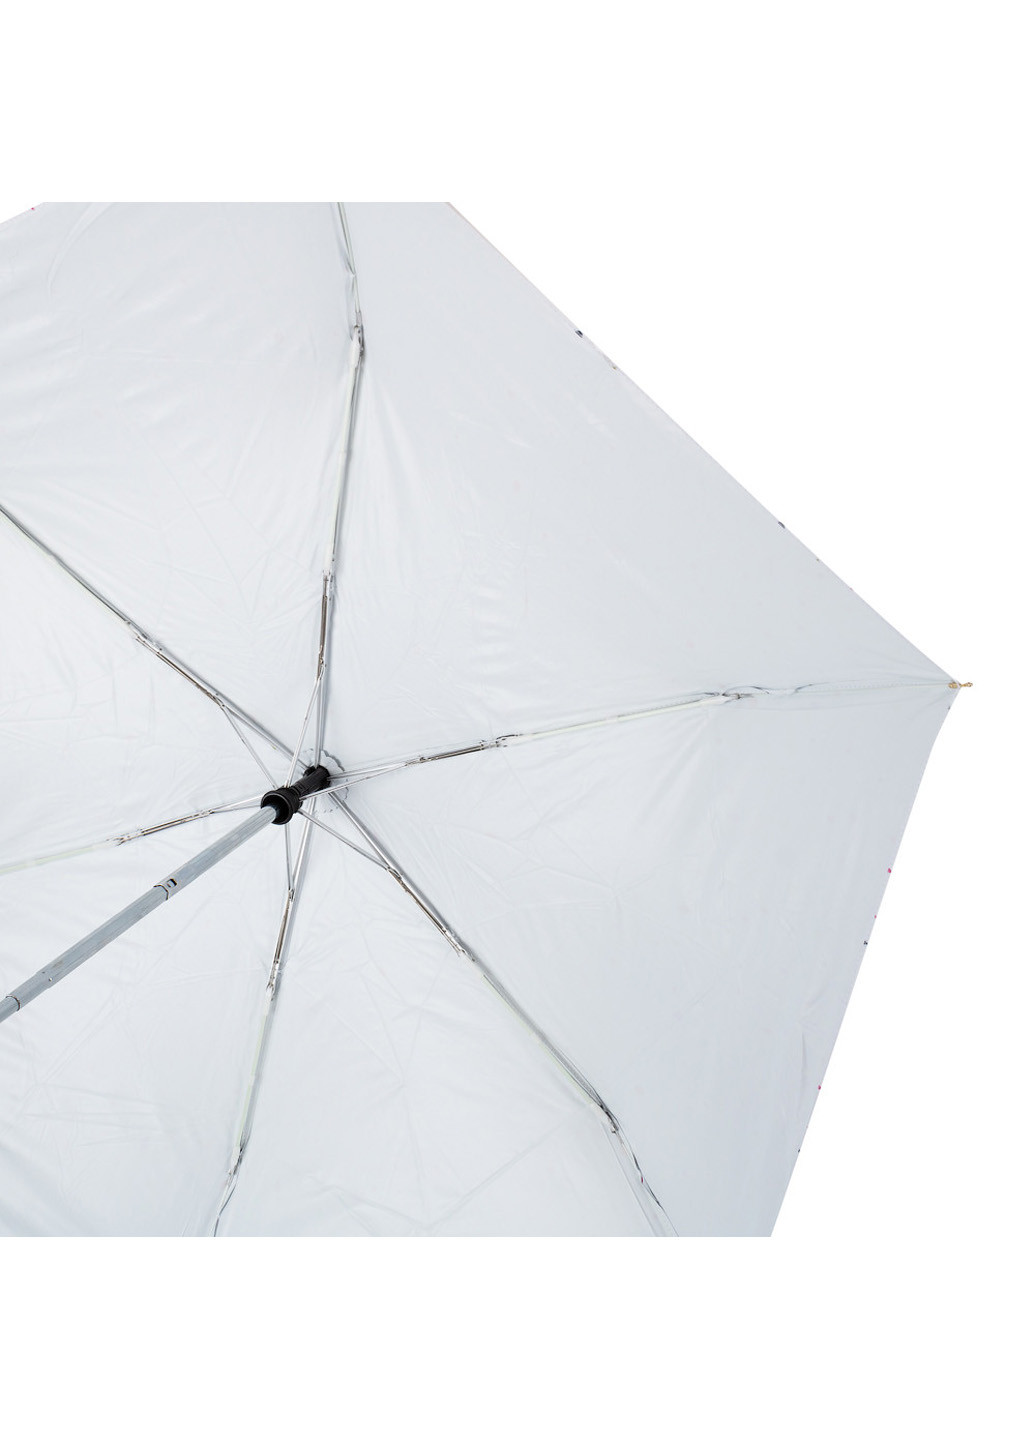 Женский складной зонт полный автомат 85 см Amo складной однотонный белый